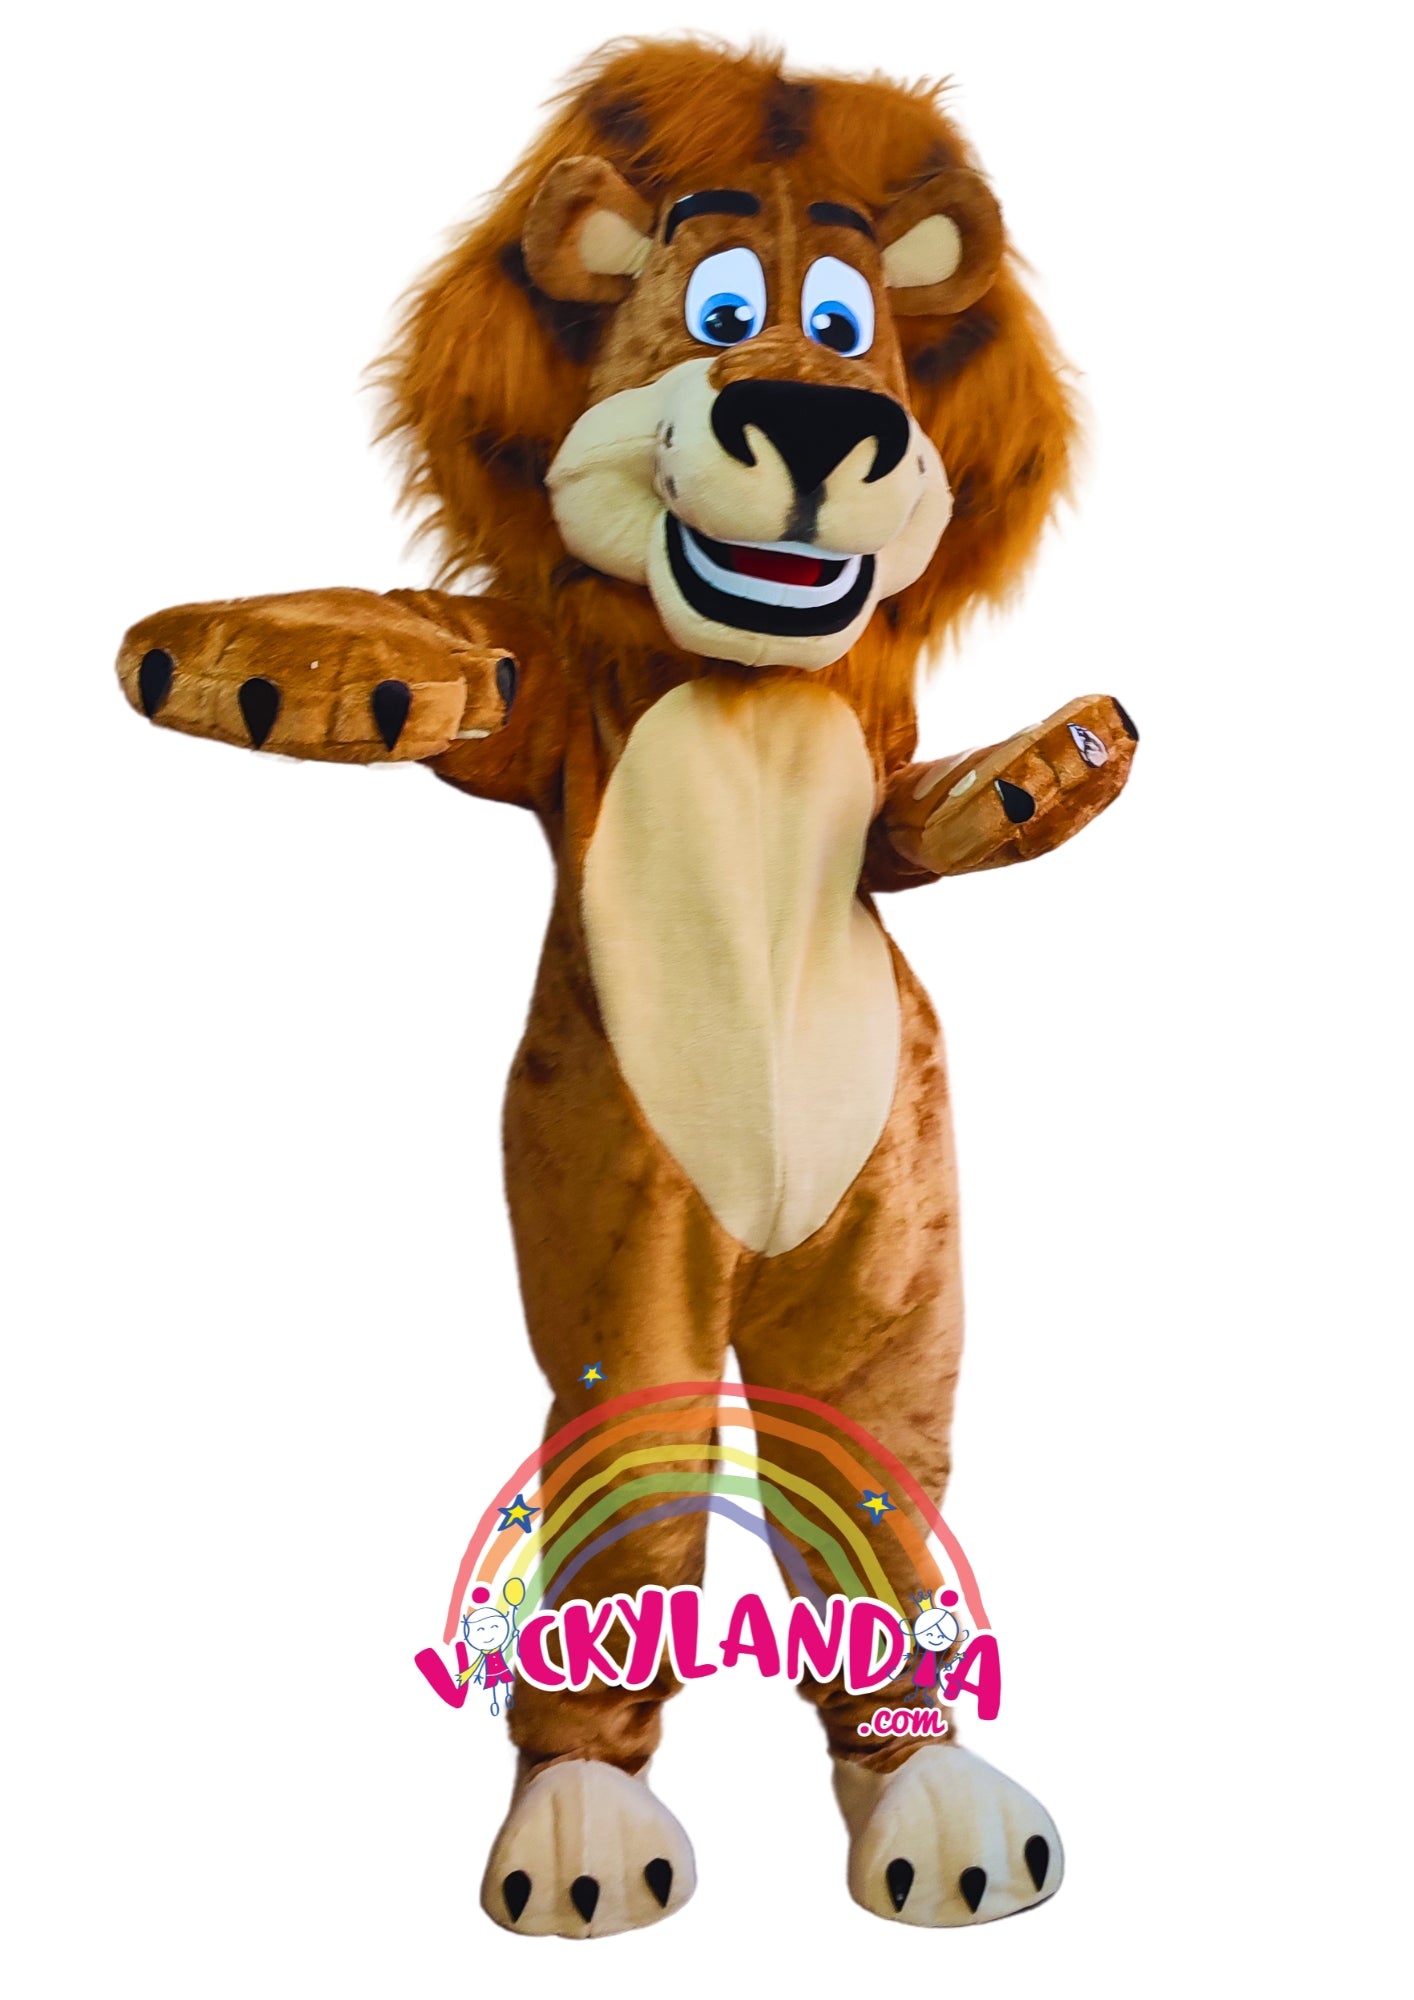 Descubre la magia de nuestro muñeco publicitario de León Rey de la Selva en Vickylandia. Son disfraces cabezones perfectos para fiestas infantiles, shows, cumpleaños, estrategias publicitarias, carnavales, fiestas patronales, espectáculos, cabalgatas y cualquier tipo de evento.